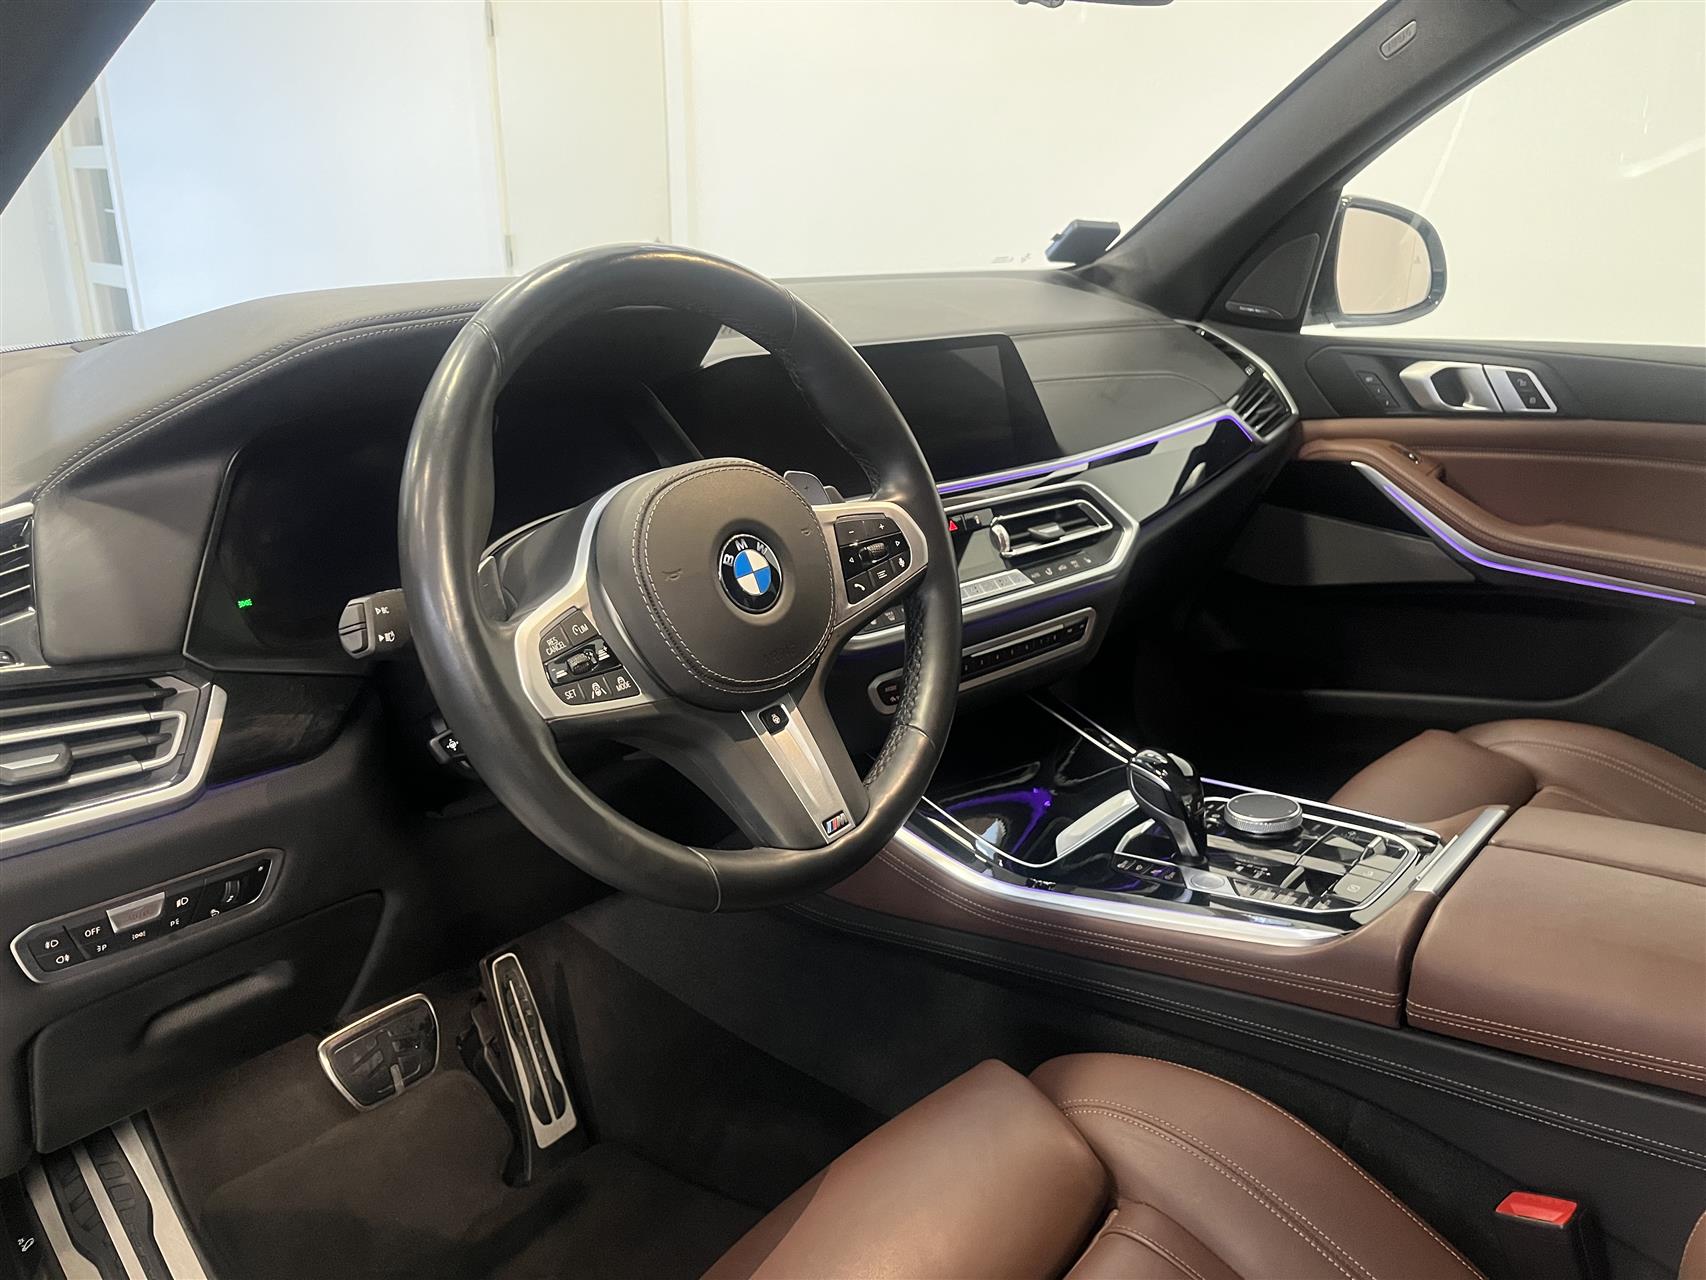 Billede af BMW X5 M50D 3,0 D XDrive Steptronic 400HK 5d 8g Aut.